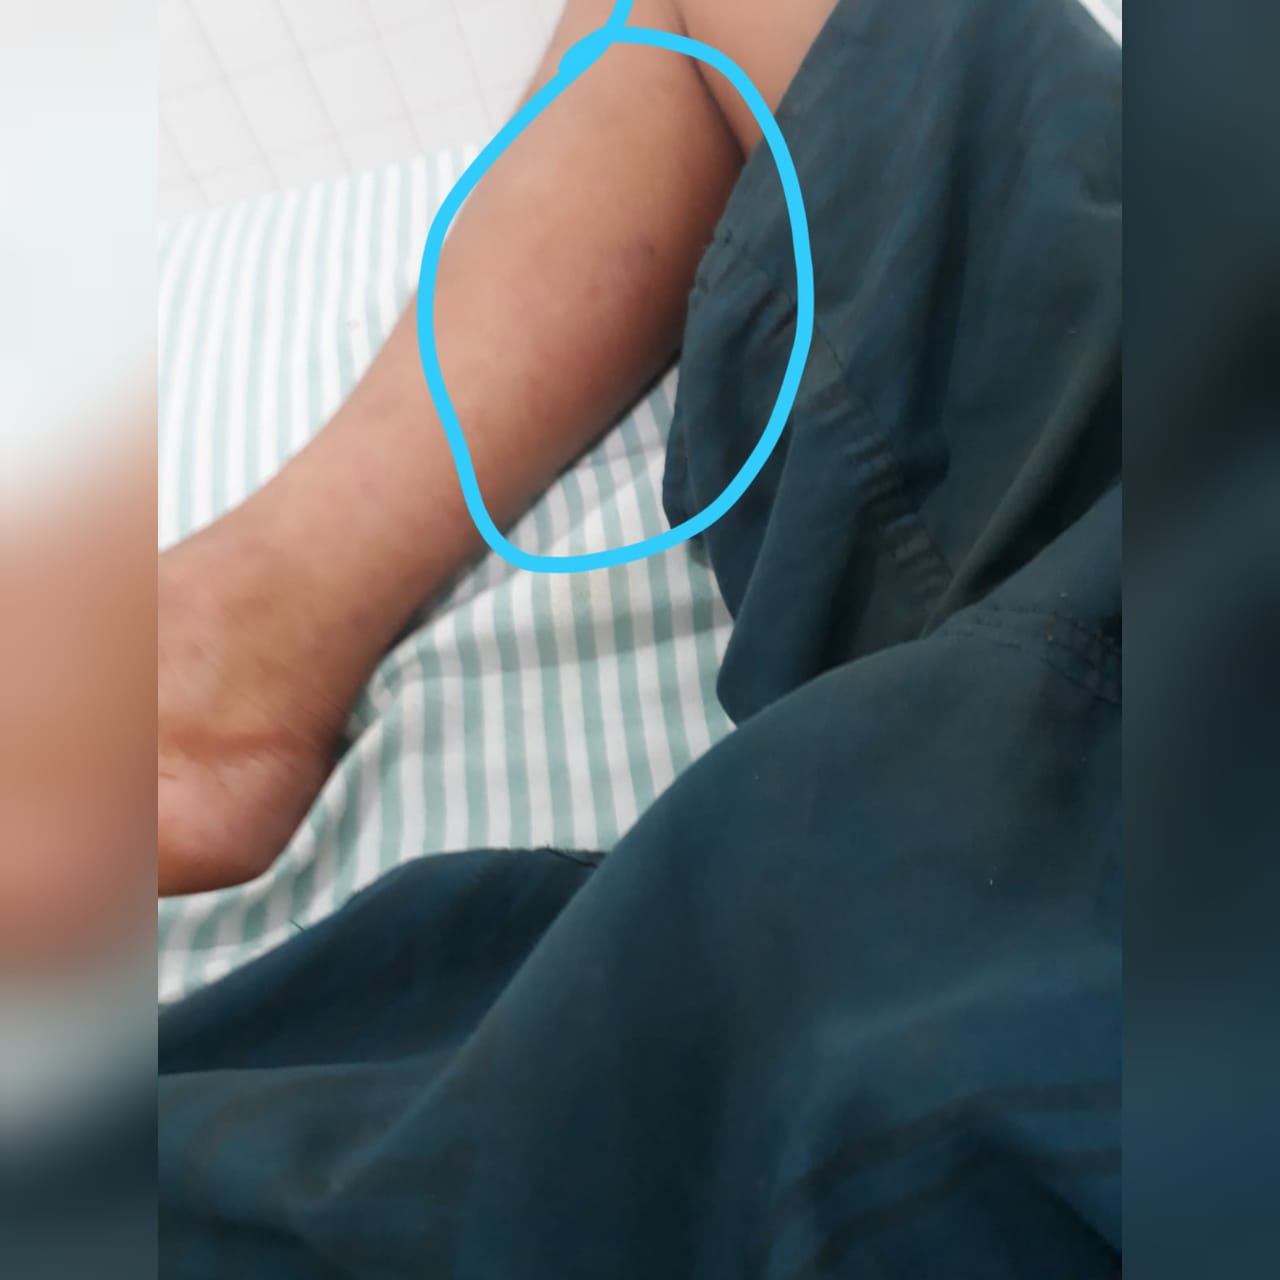 Uma criança, de 5 anos, precisou ser internada em uma UTI do Hospital de Doenças Tropicais (HDT), após ser picada por uma cobra em Ipameri. (Foto: arquivo)